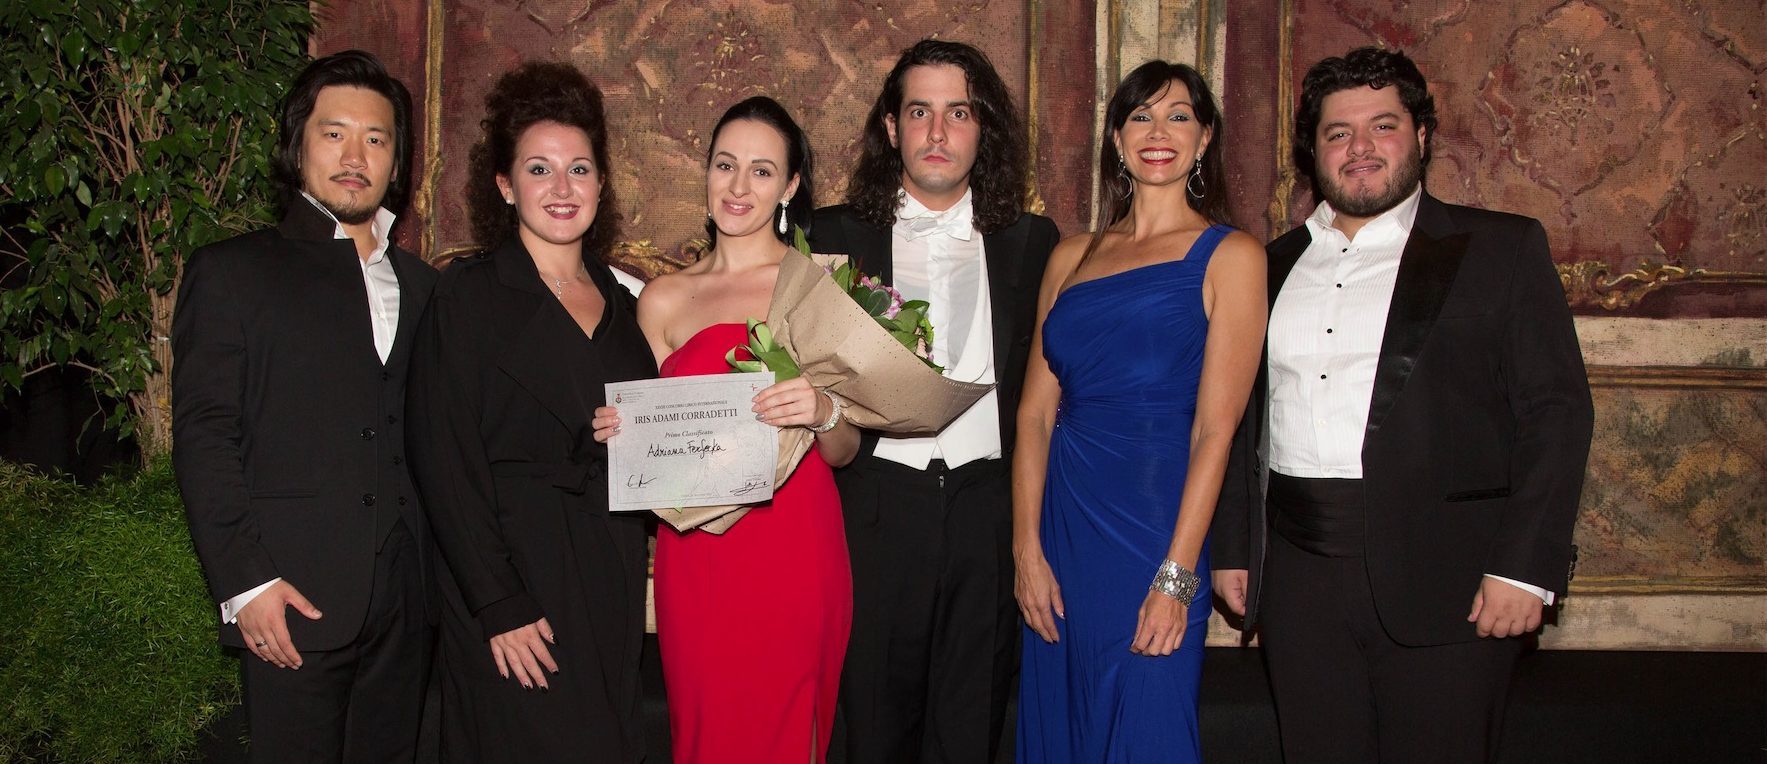 Nominati i vincitori della XXVIII edizione del prestigioso concorso lirico Iris Adami Corradetti.